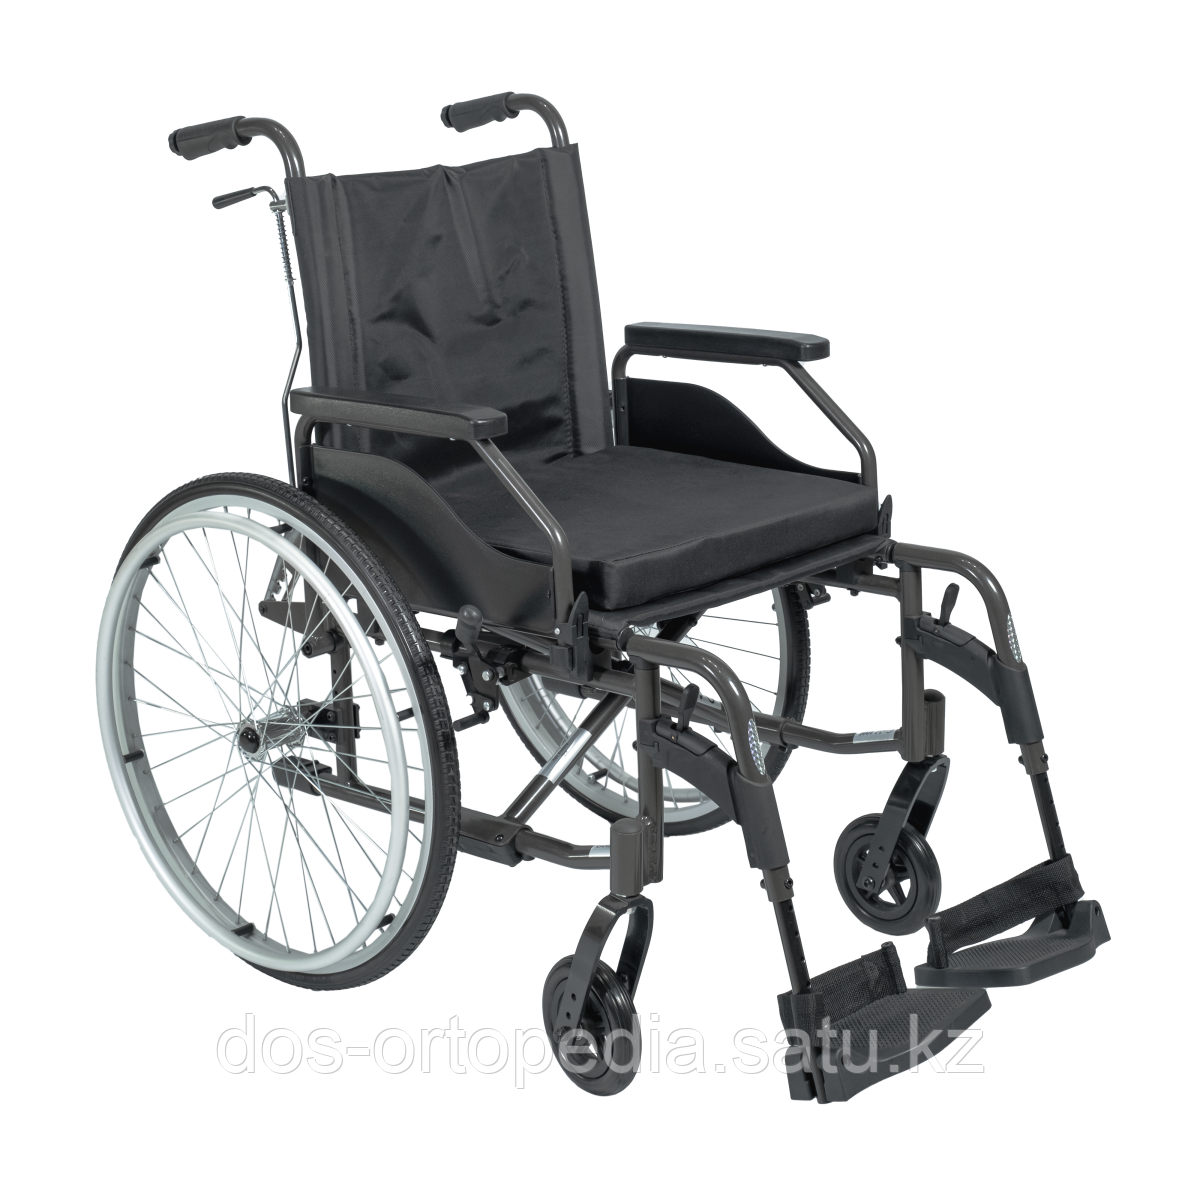 Механическая инвалидная коляска GOLD 400